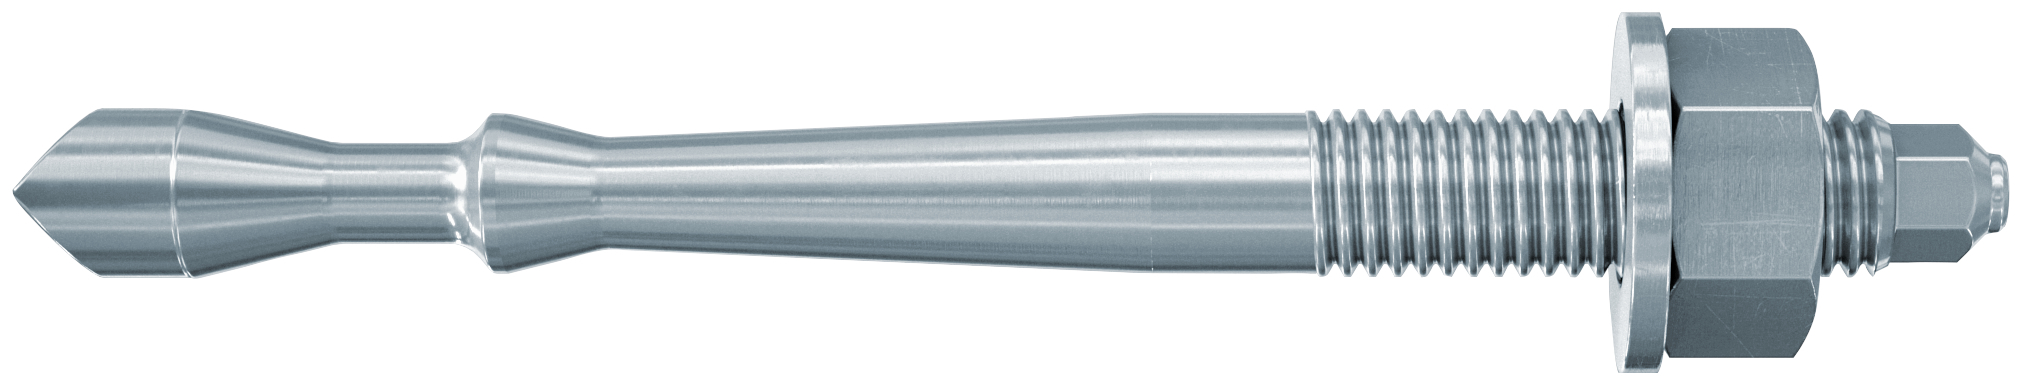 fischer Barra multicono in acciaio FHB II-A S M12x75/25 per ancorante chimico FIS HB (1 Pz.) Barra multicono corta in acciaio zincato classe 8.8. Massime prestazioni a trazione in calcestruzzo fessurato e a ridotte distanze dai bordi..